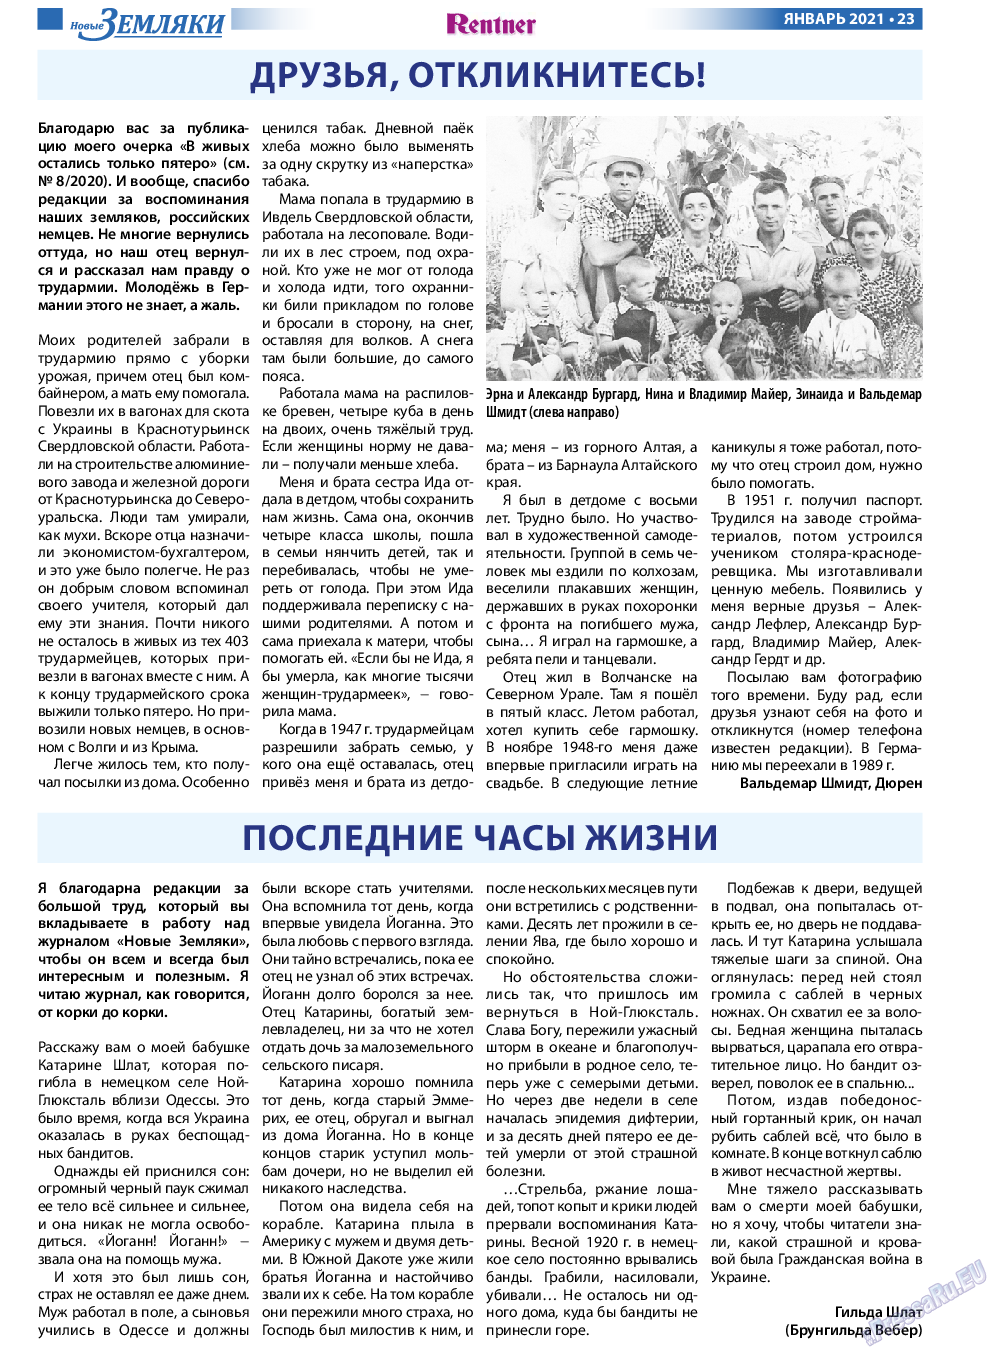 Новые Земляки, газета. 2021 №1 стр.23